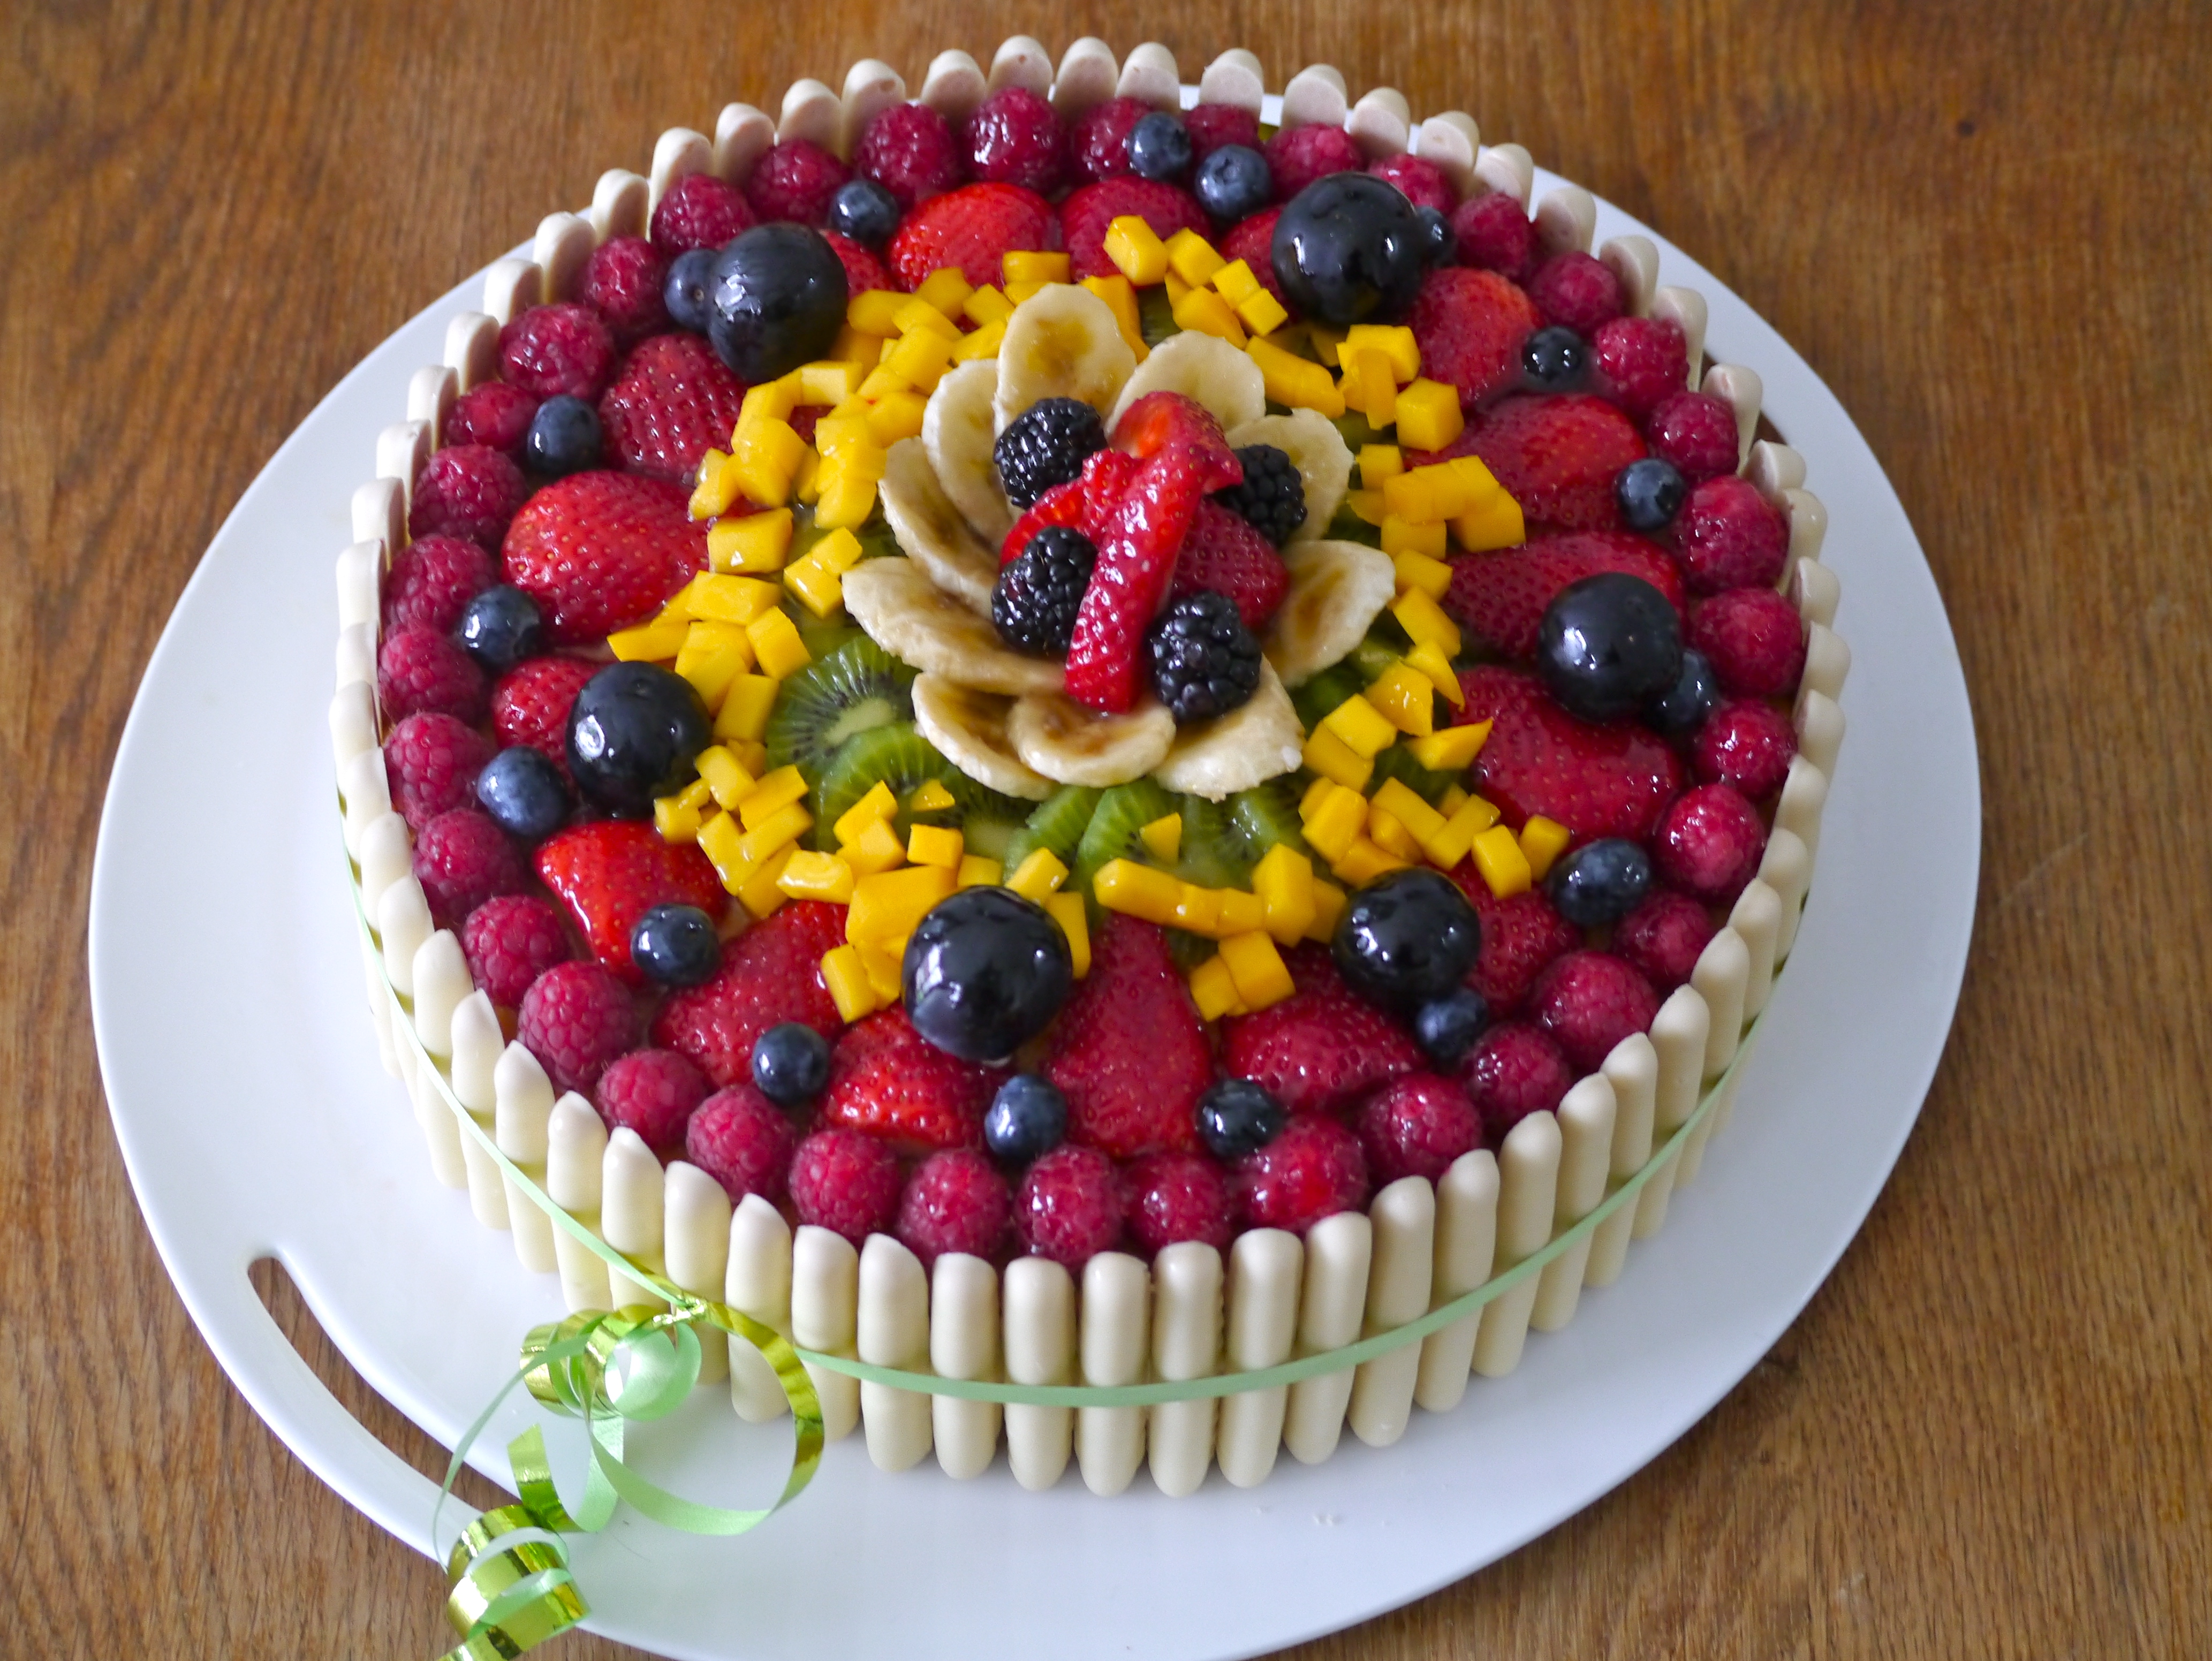 gateau anniversaire facile aux fruits Gateau D Anniversaire Aux Fruits Mes Recettes Tout Simplement gateau anniversaire facile aux fruits